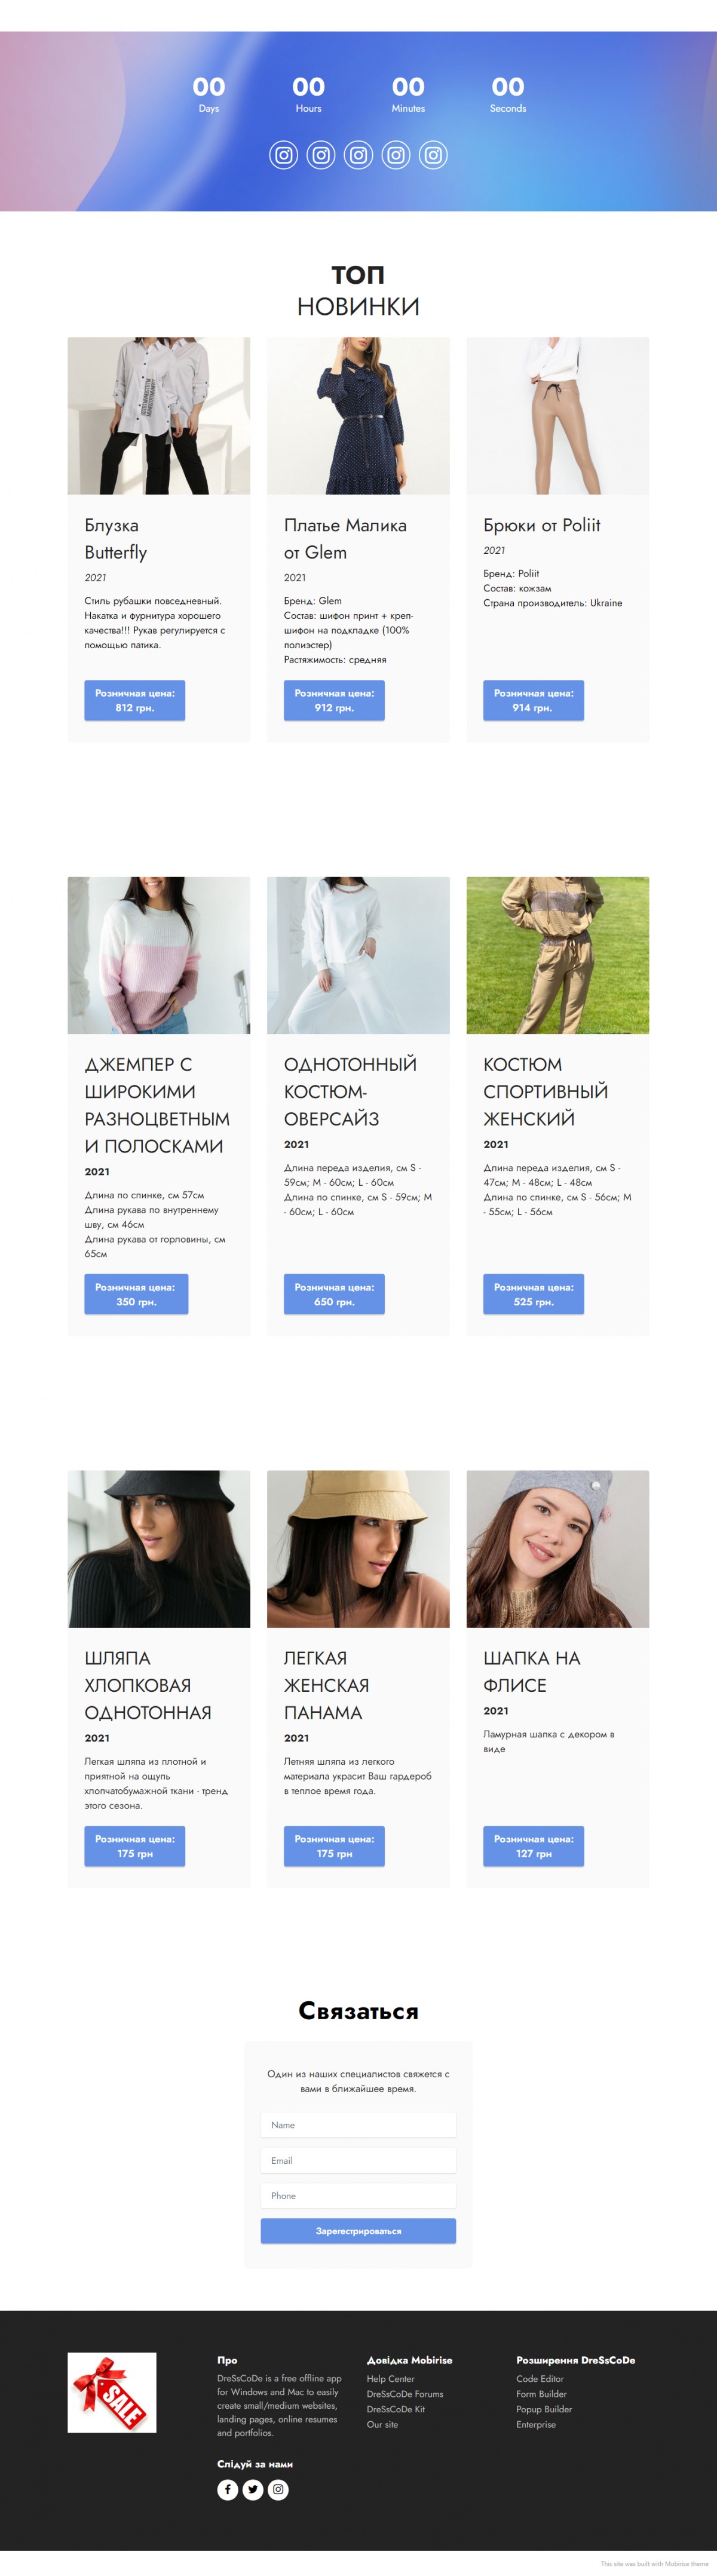 Дизайн интернет-магазина женской одежды)